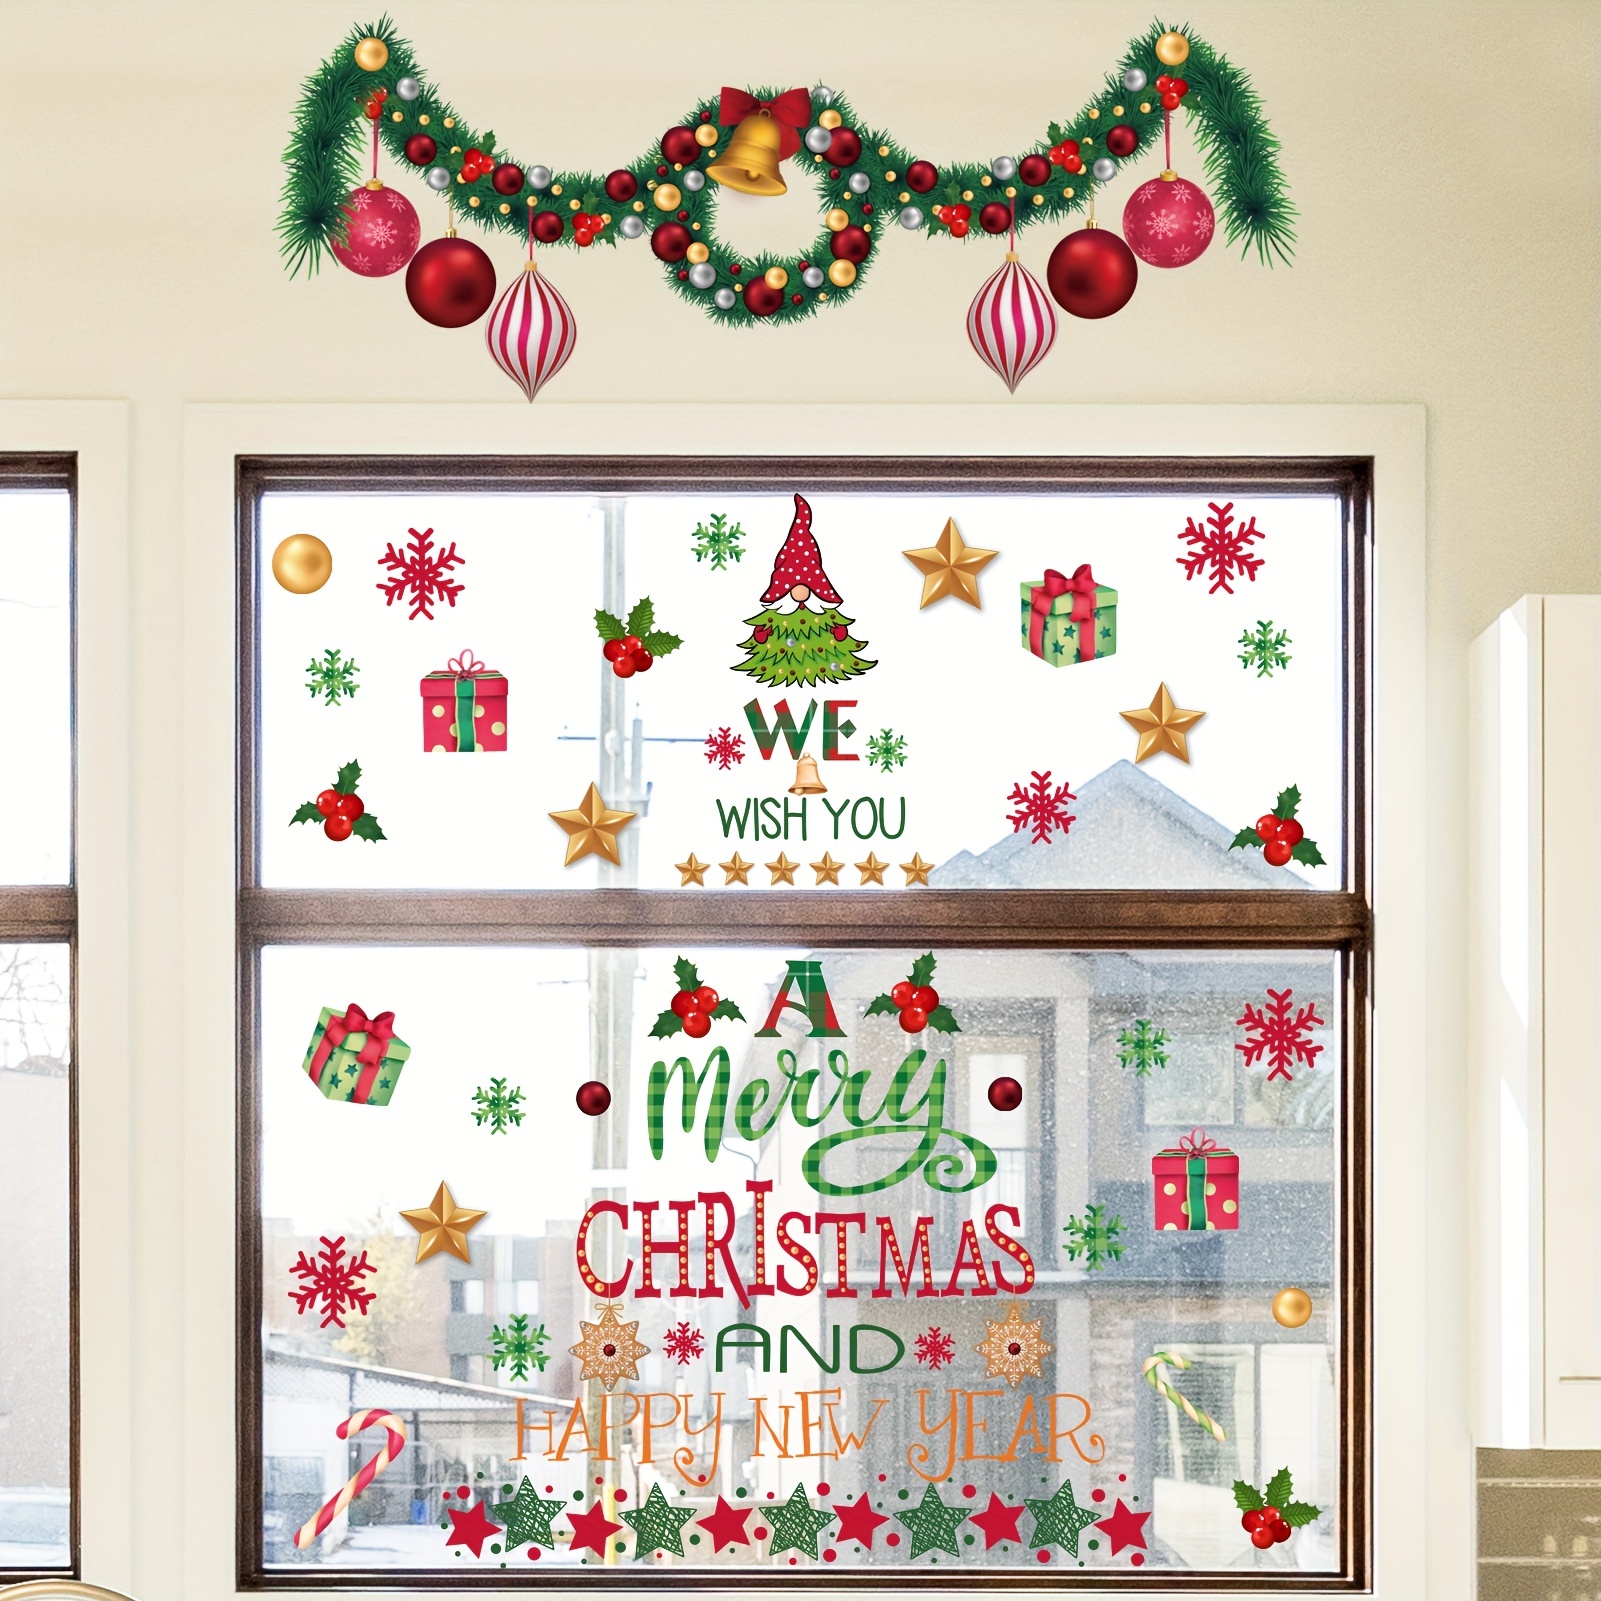 Frohe Weihnachten Wand Fenster Aufkleber Weihnachten Dekorationen